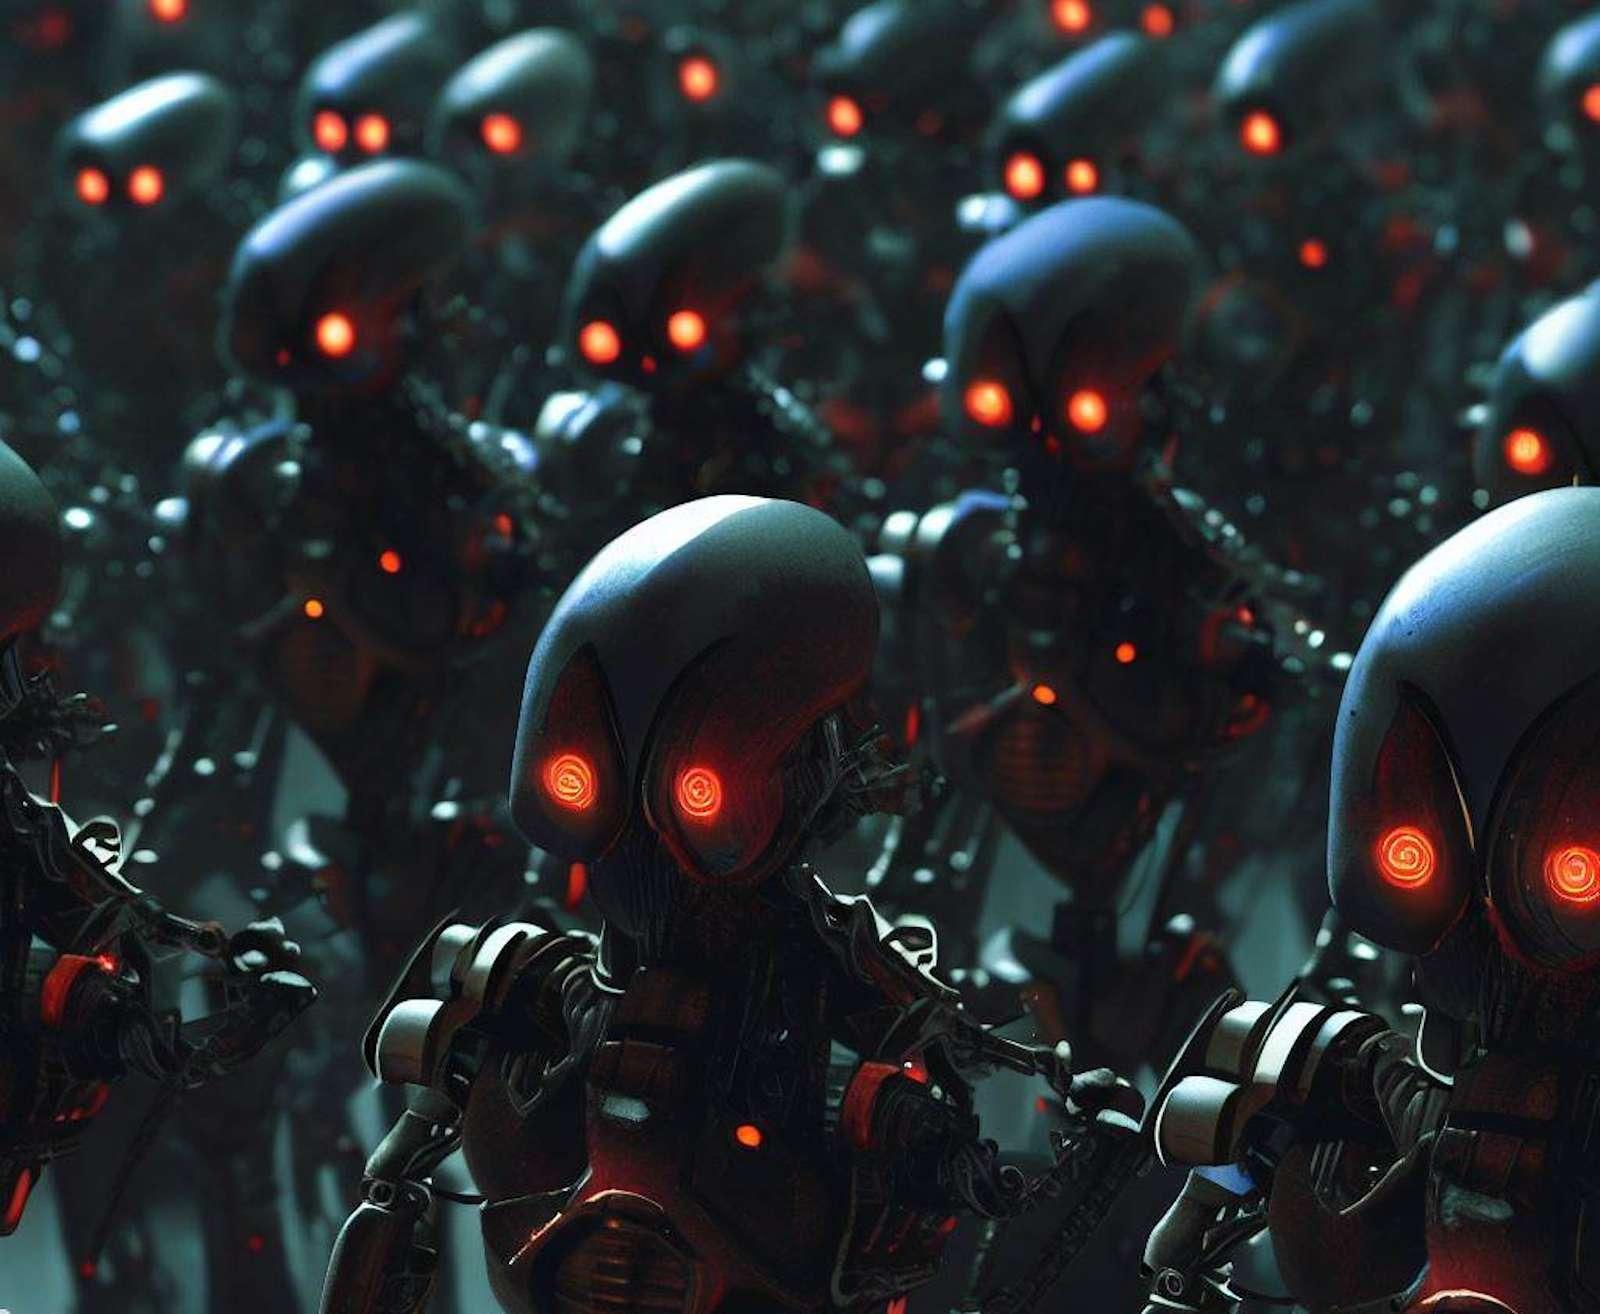 robotstueurs - US-Armee plant Truppen aus tausenden von Robotern, um der chinesischen Macht entgegenzutreten